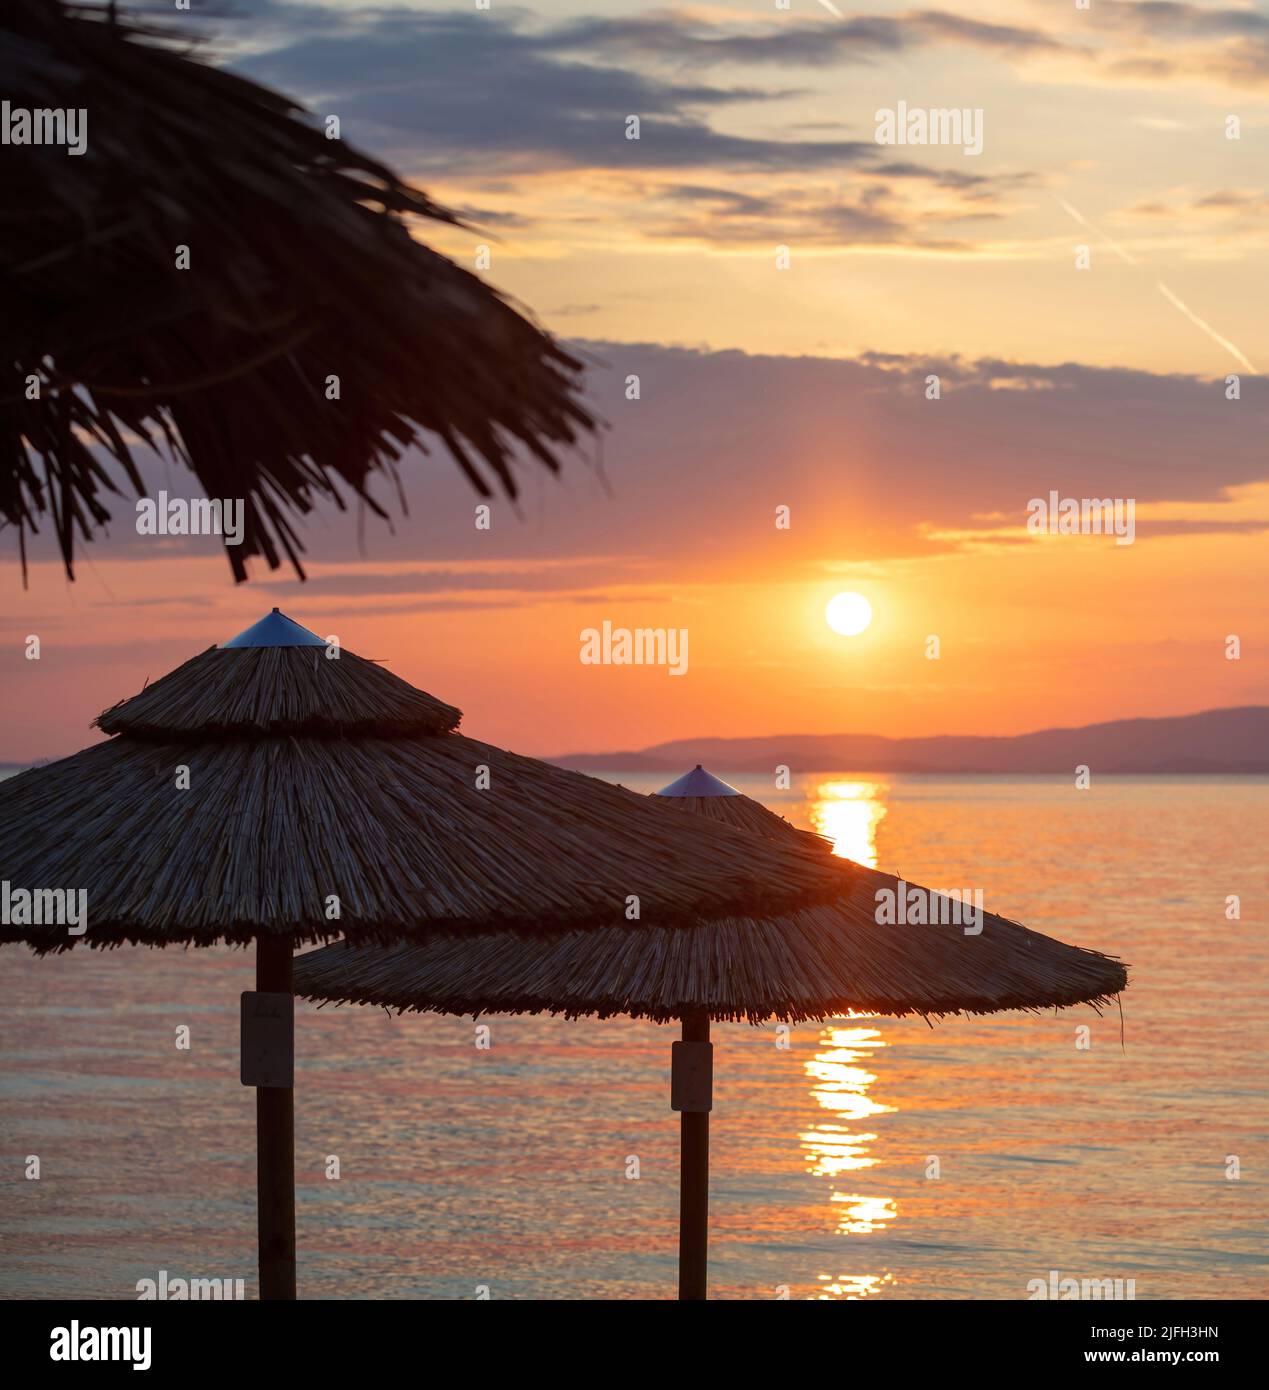 Tramonto sulla spiaggia sul Mar Egeo, Grecia. Silhouette di ombrelloni di paglia, riflessi dorati sull'acqua dell'oceano increspata, cielo di colore arancione e nuvole Foto Stock